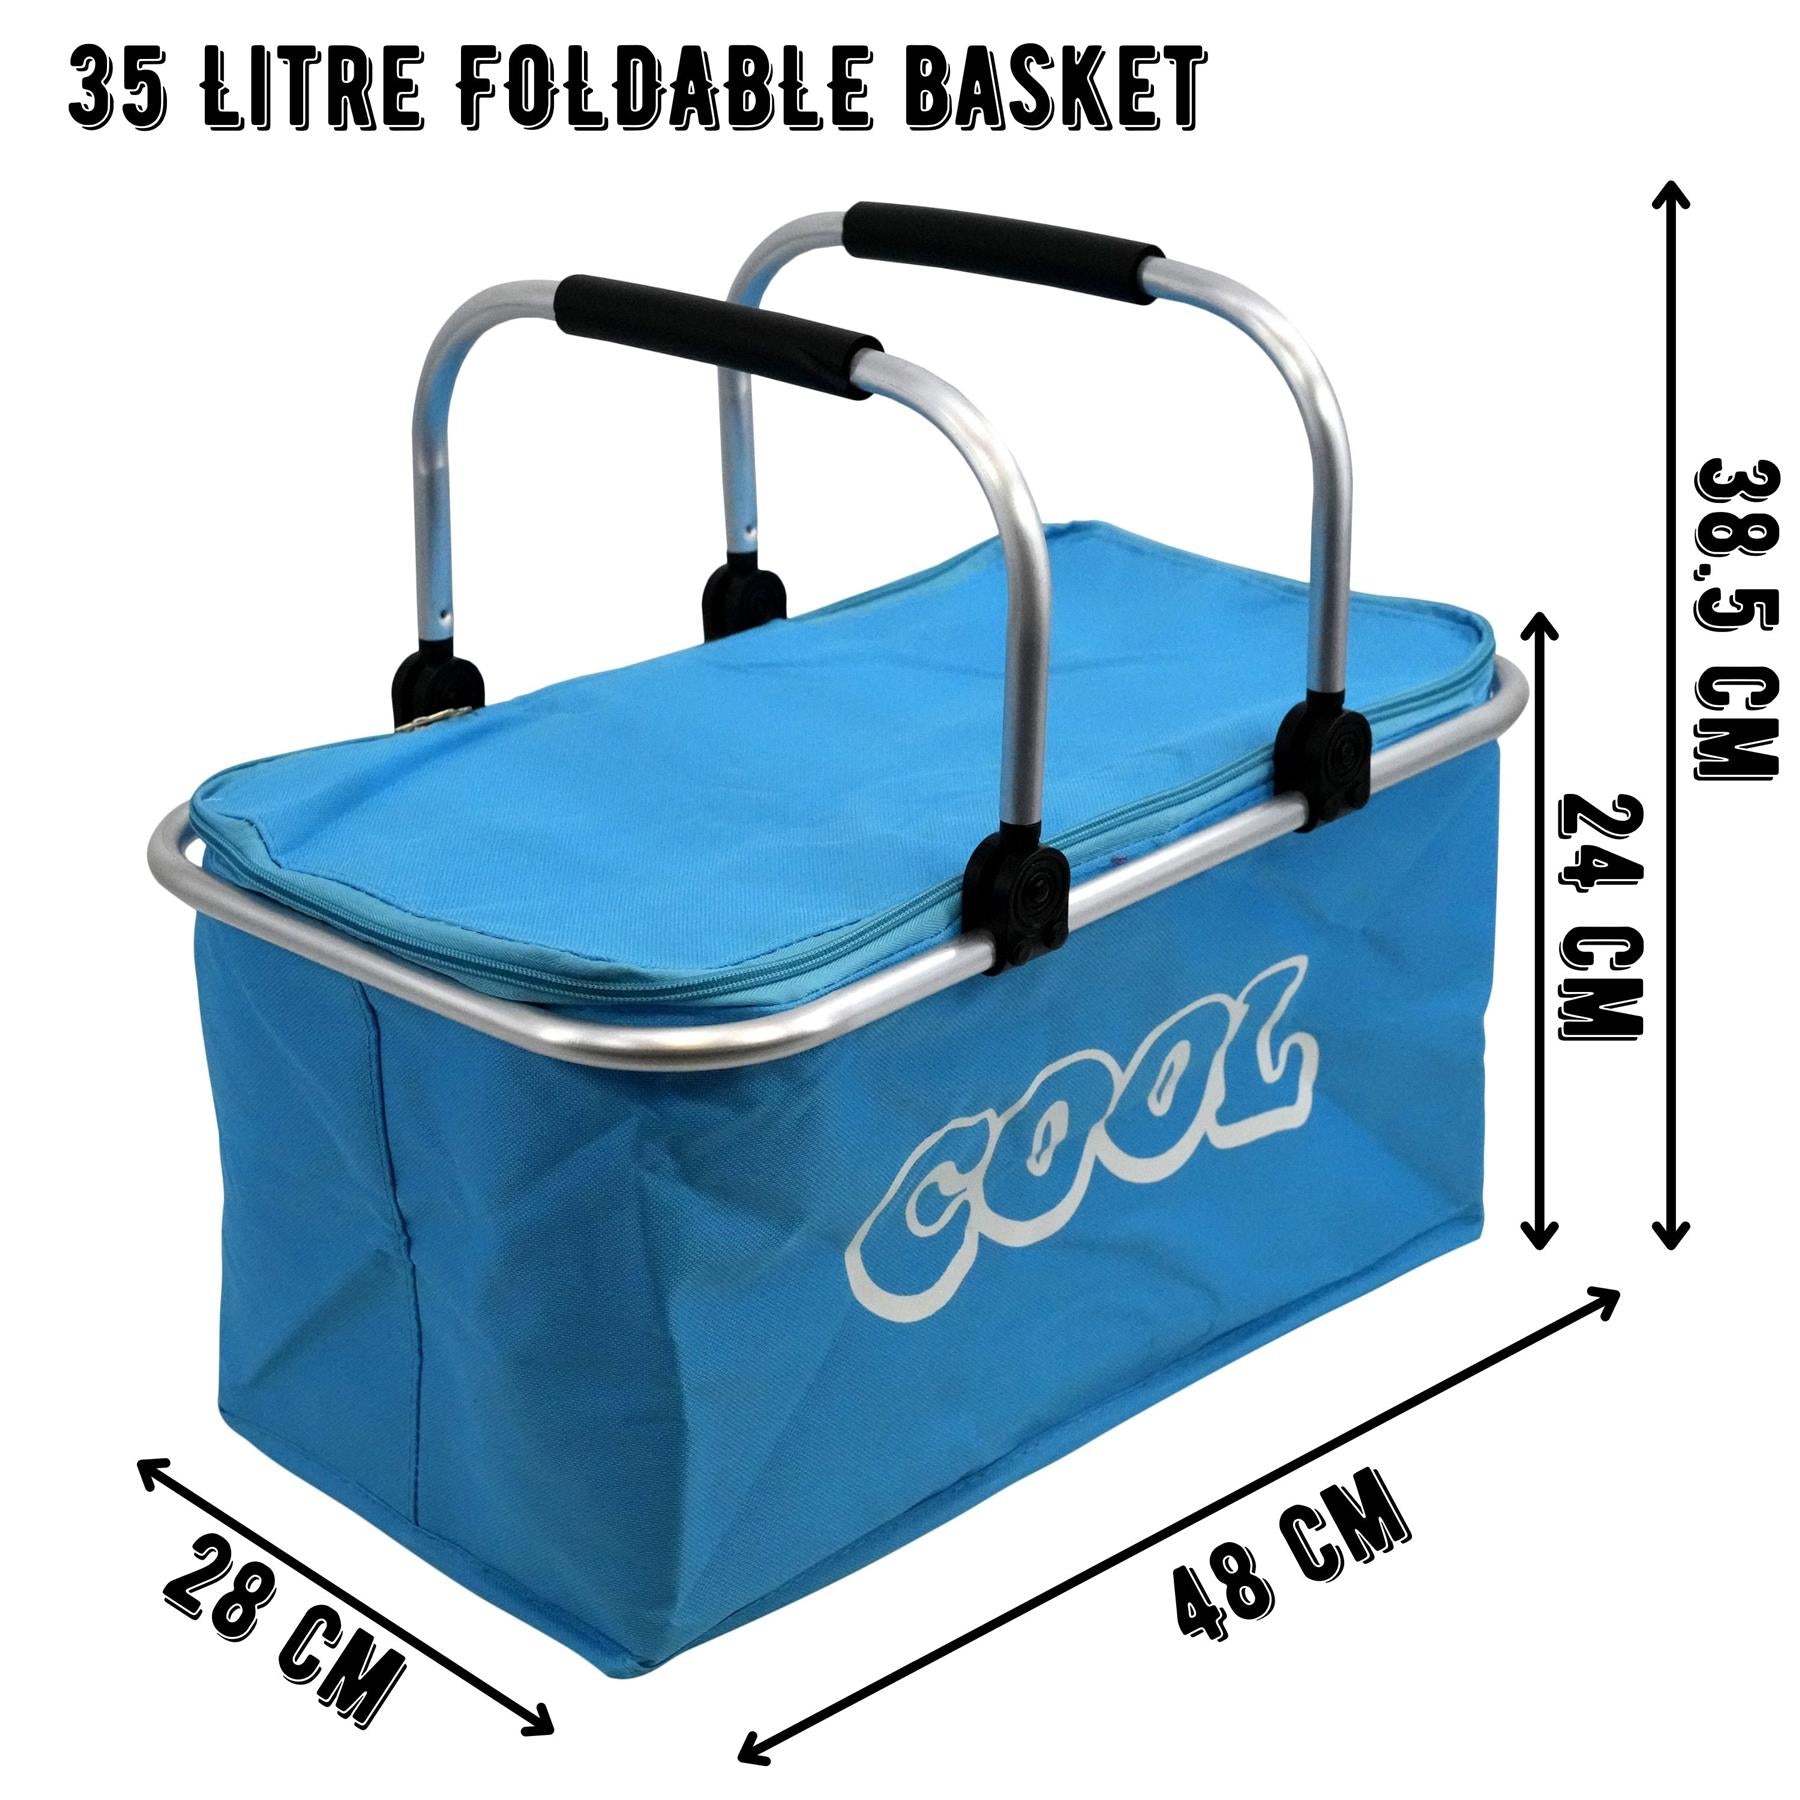 Blue Cooler Basket Bag GEEZY - The Magic Toy Shop